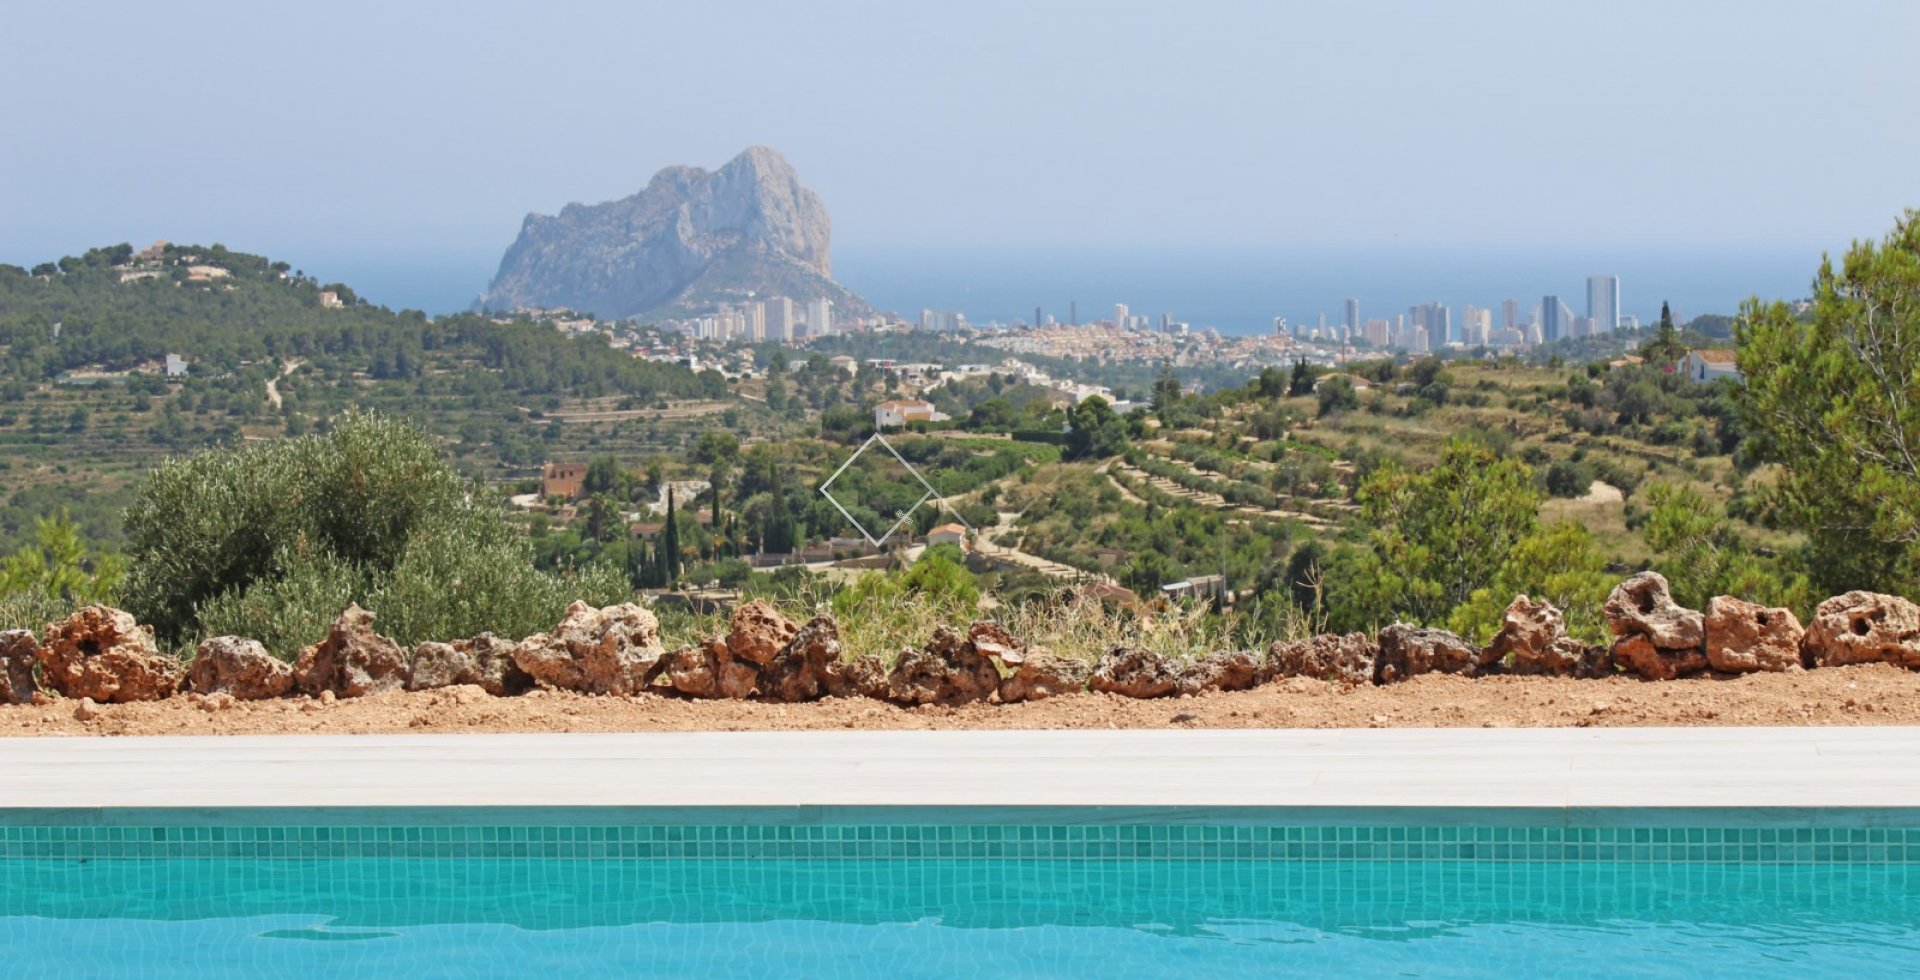 Pool, Meerblick und Peñon-Felsen - Neubau einer Finca-Villa mit atemberaubendem Meerblick in Benissa zu verkaufen